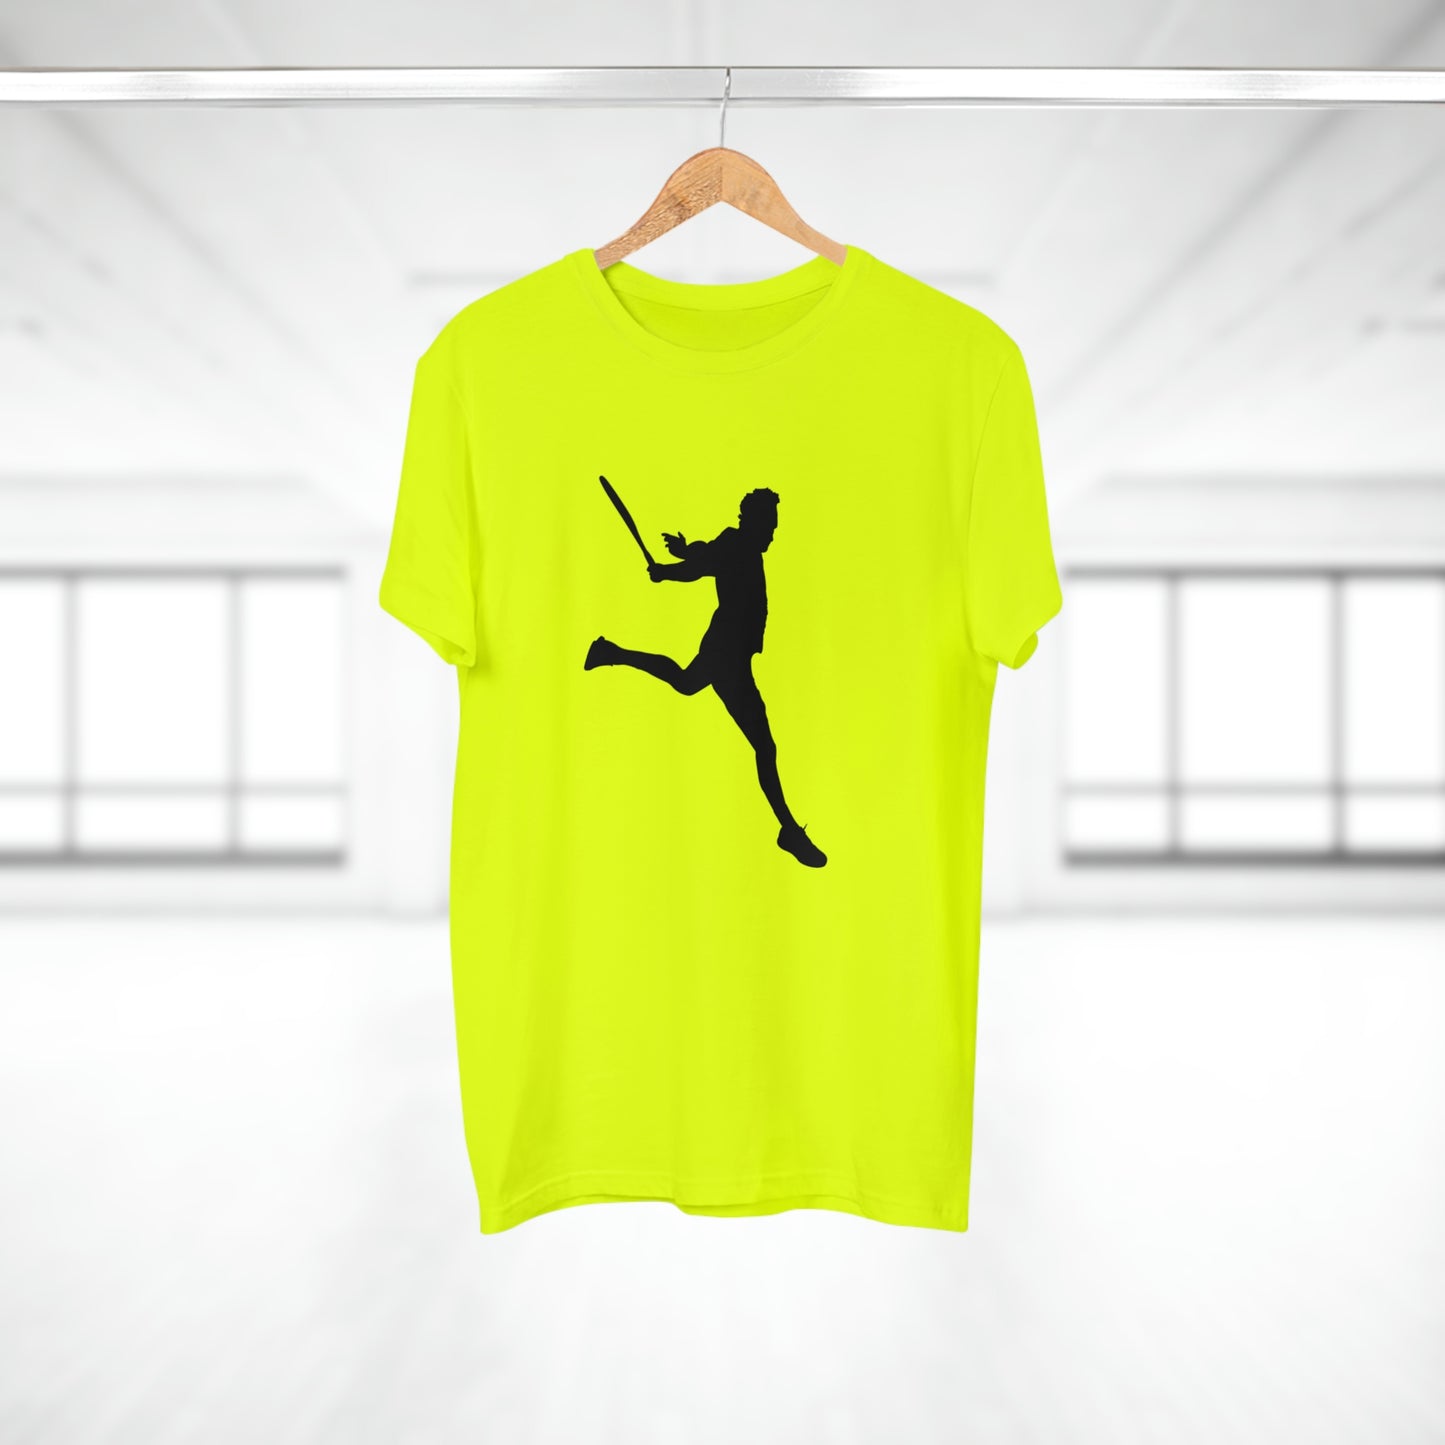 Tennis Legend - Federer - Men's T-shirt